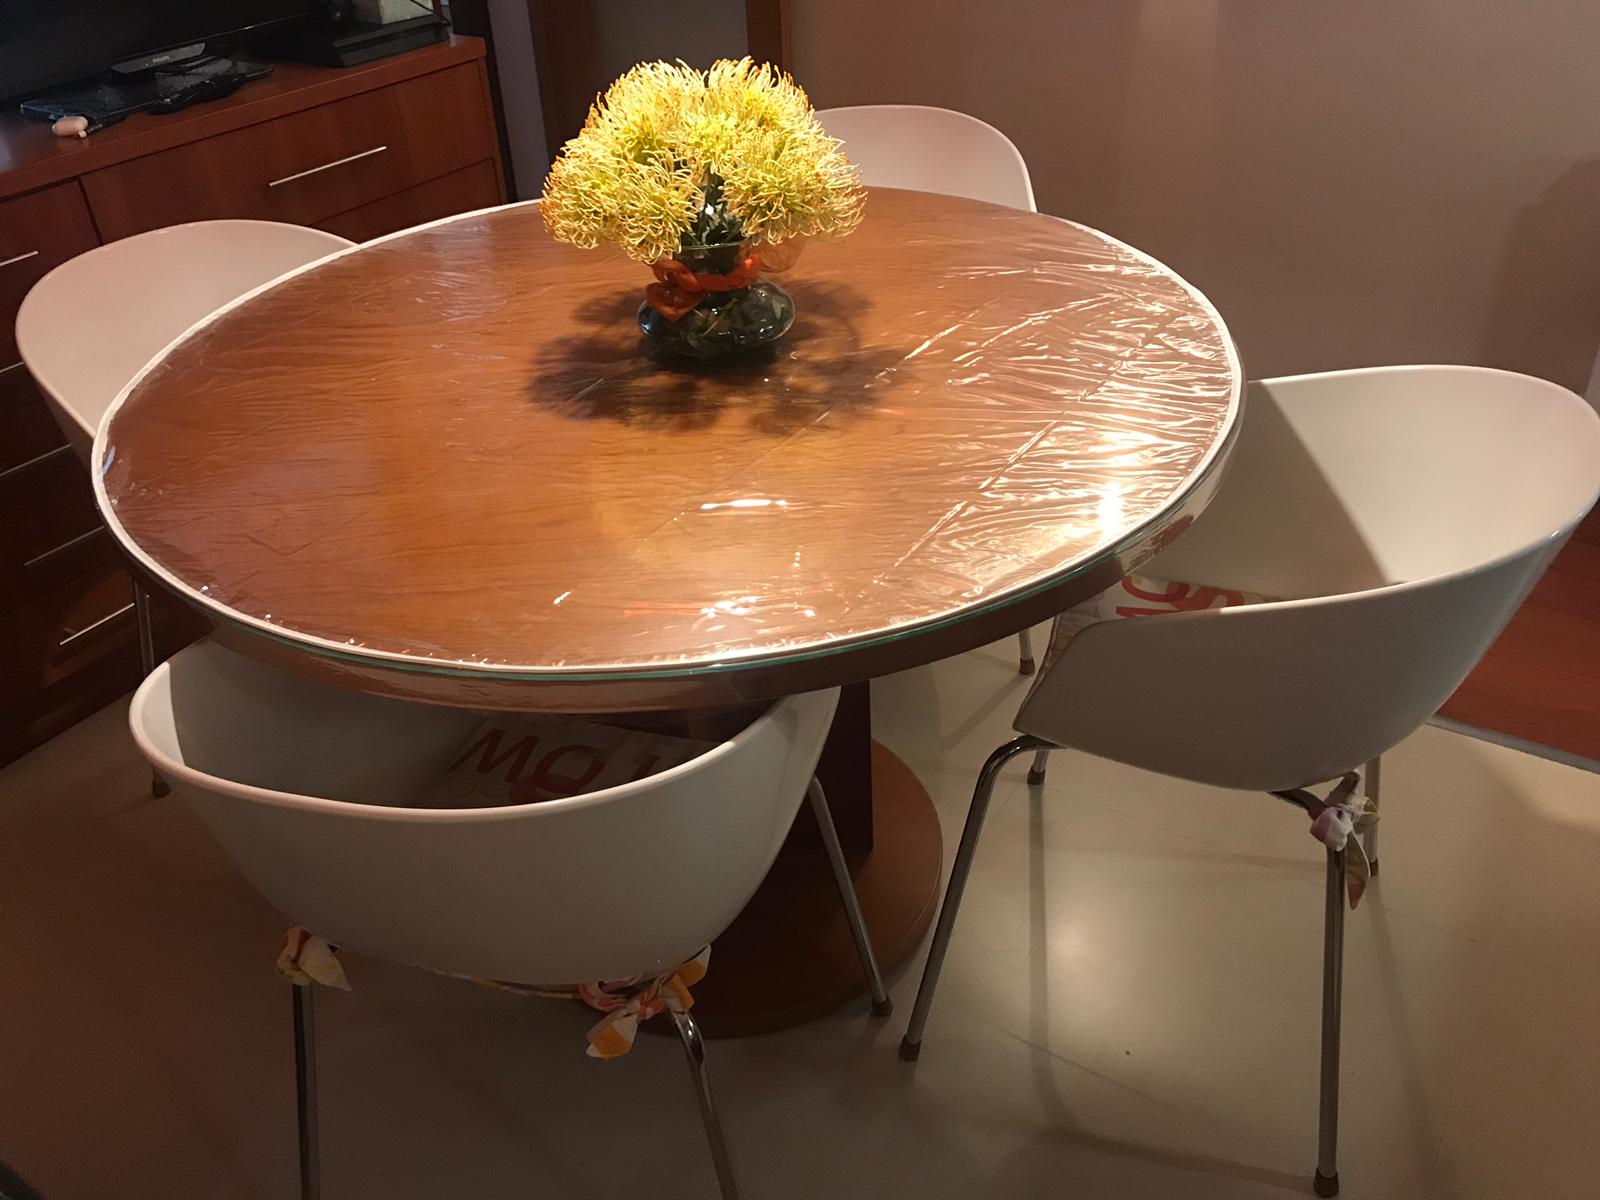 hule mesa redonda de 90 – Compra hule mesa redonda de 90 con envío gratis  en AliExpress version